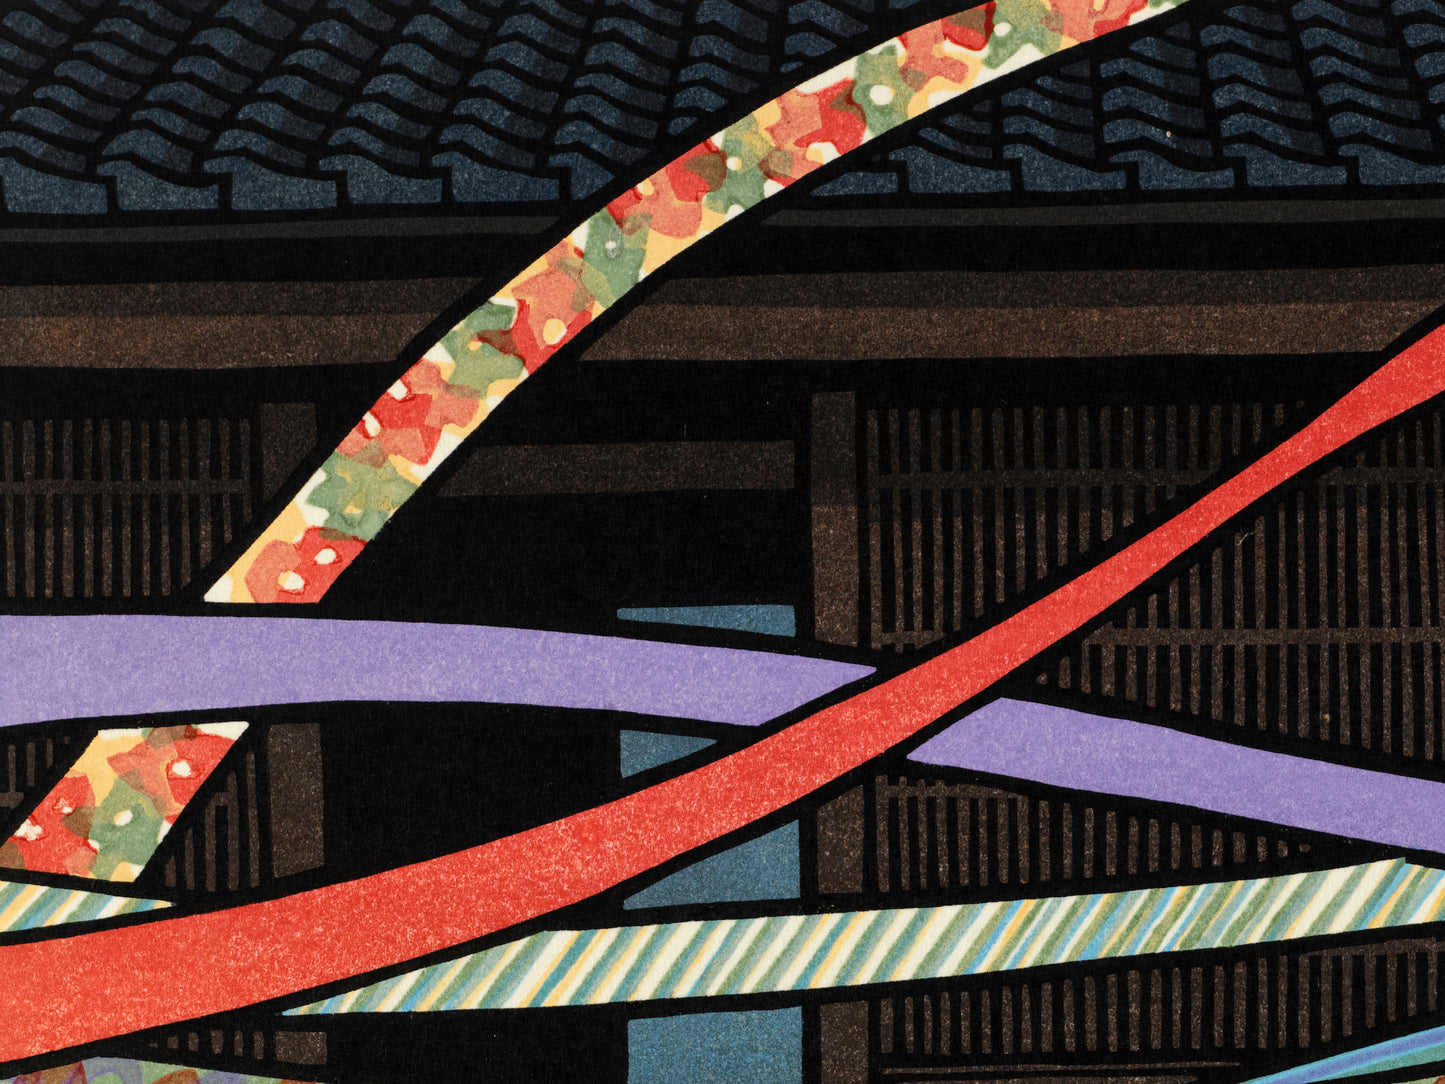 estampe japonaise contemporaine obi au vent devant facade en bois de maison traditionnelle japonaise, gros plan sur les ceintures colorées